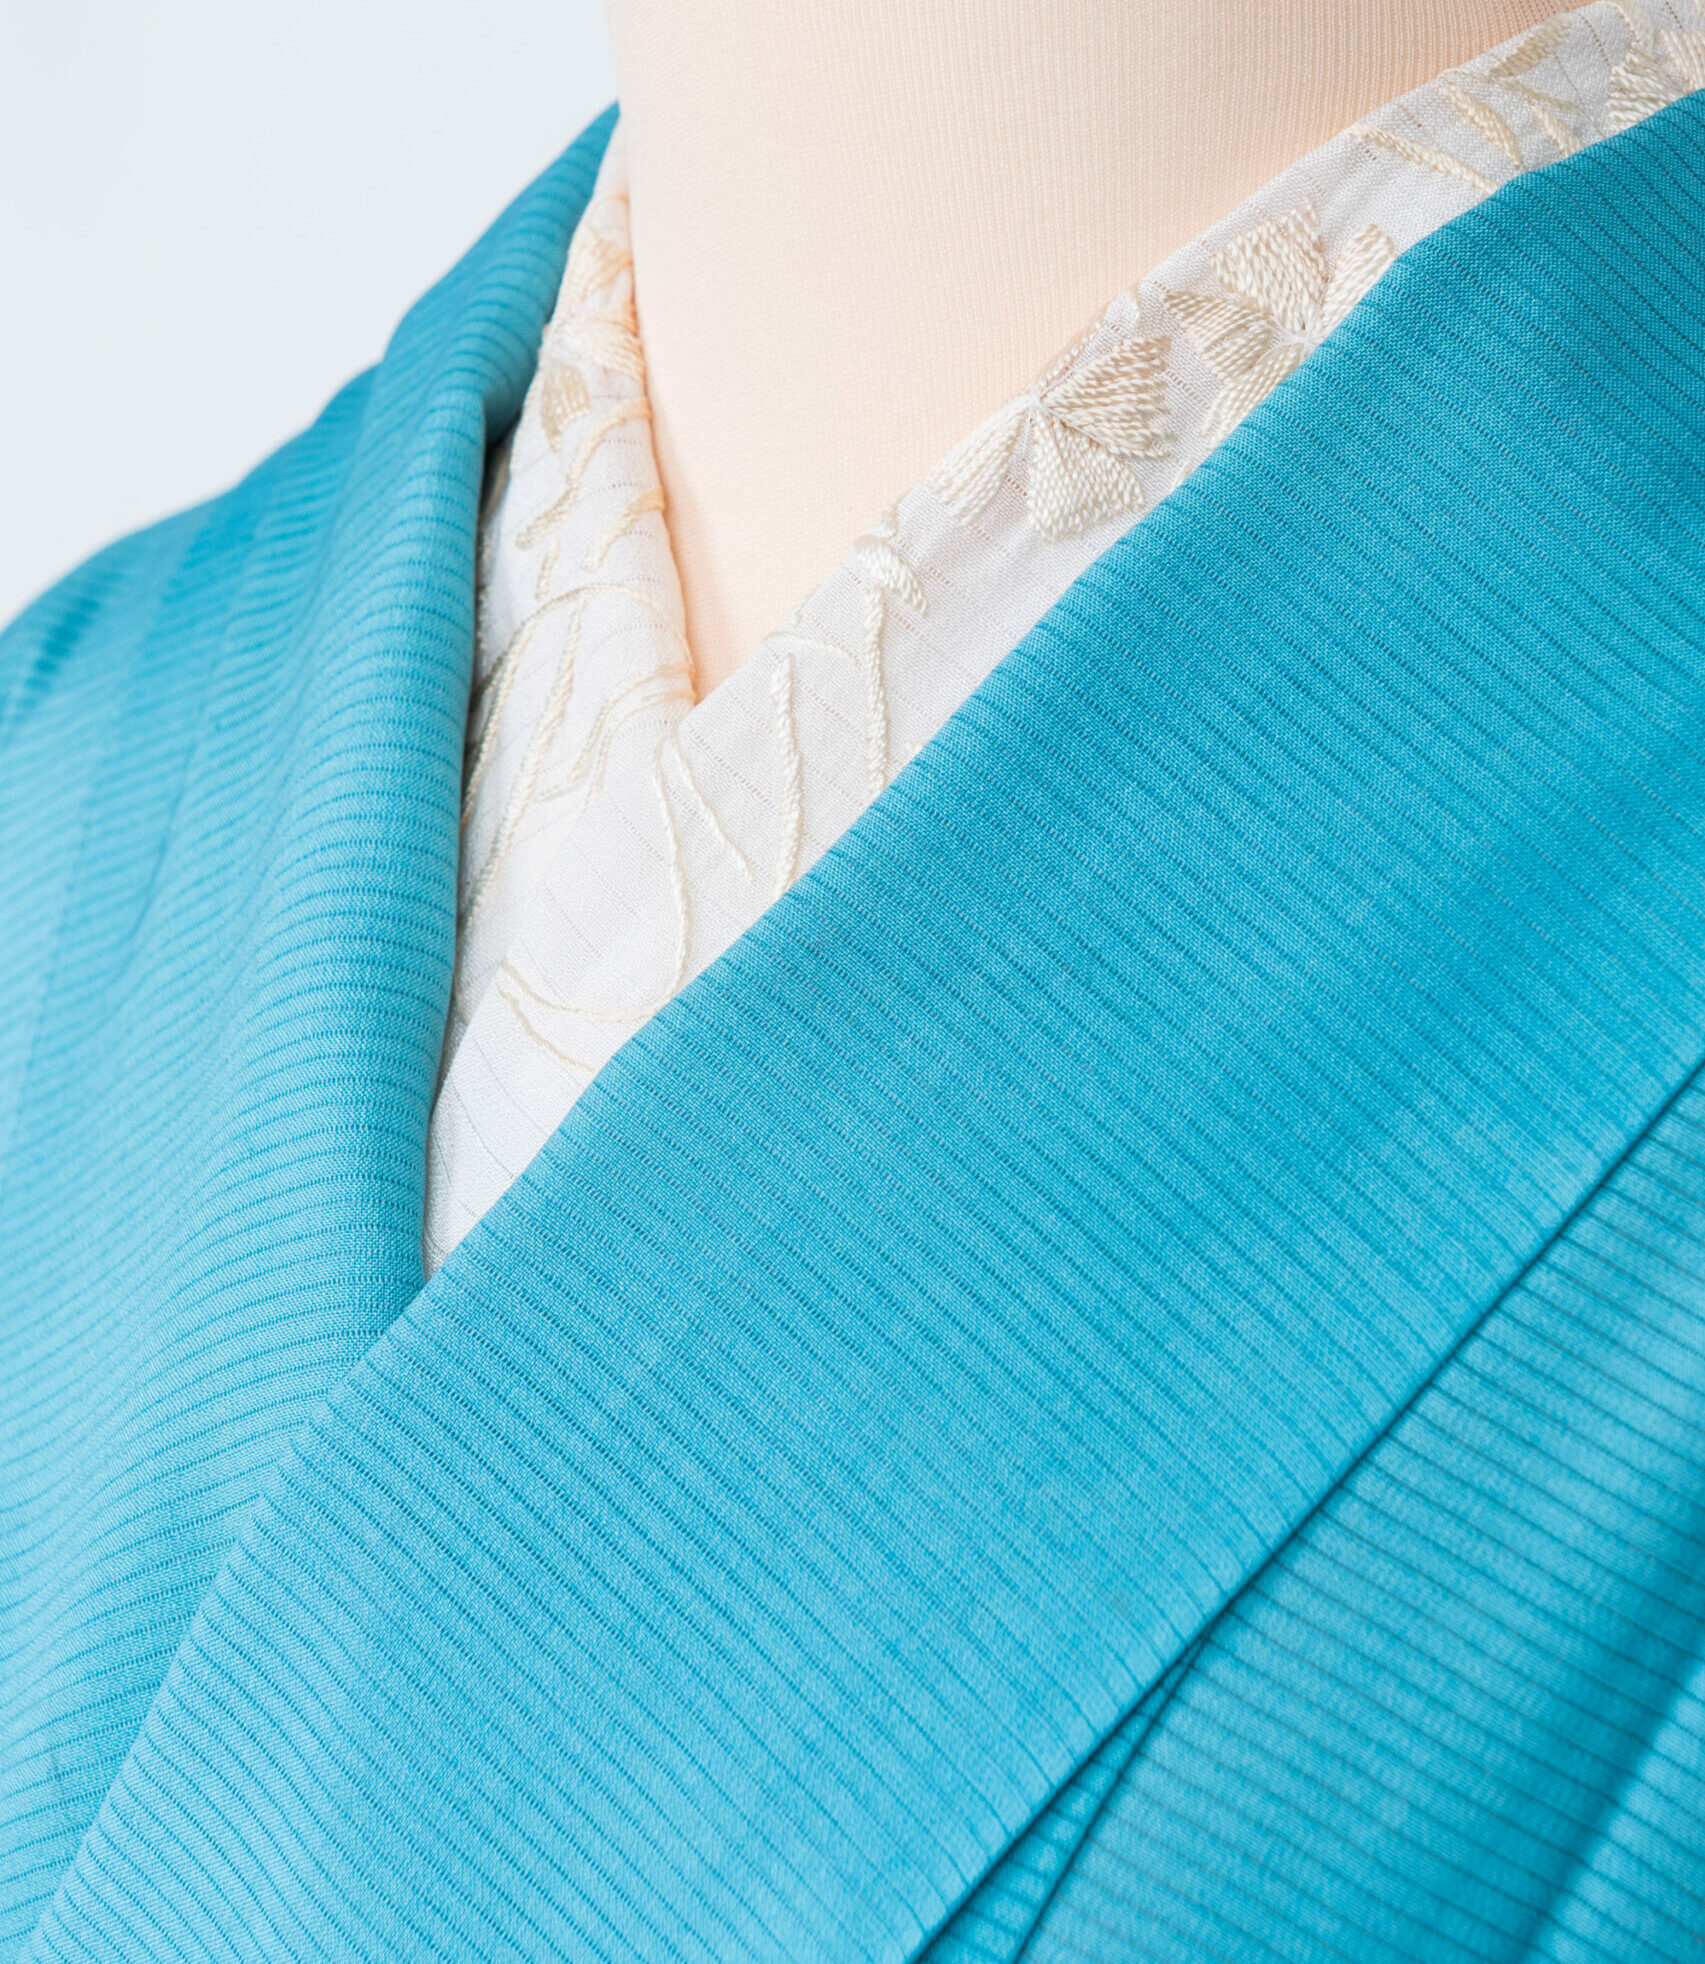 ブルーグリーンの横絽に白鷺の夏用五つ紋付色留袖◆【tom29】